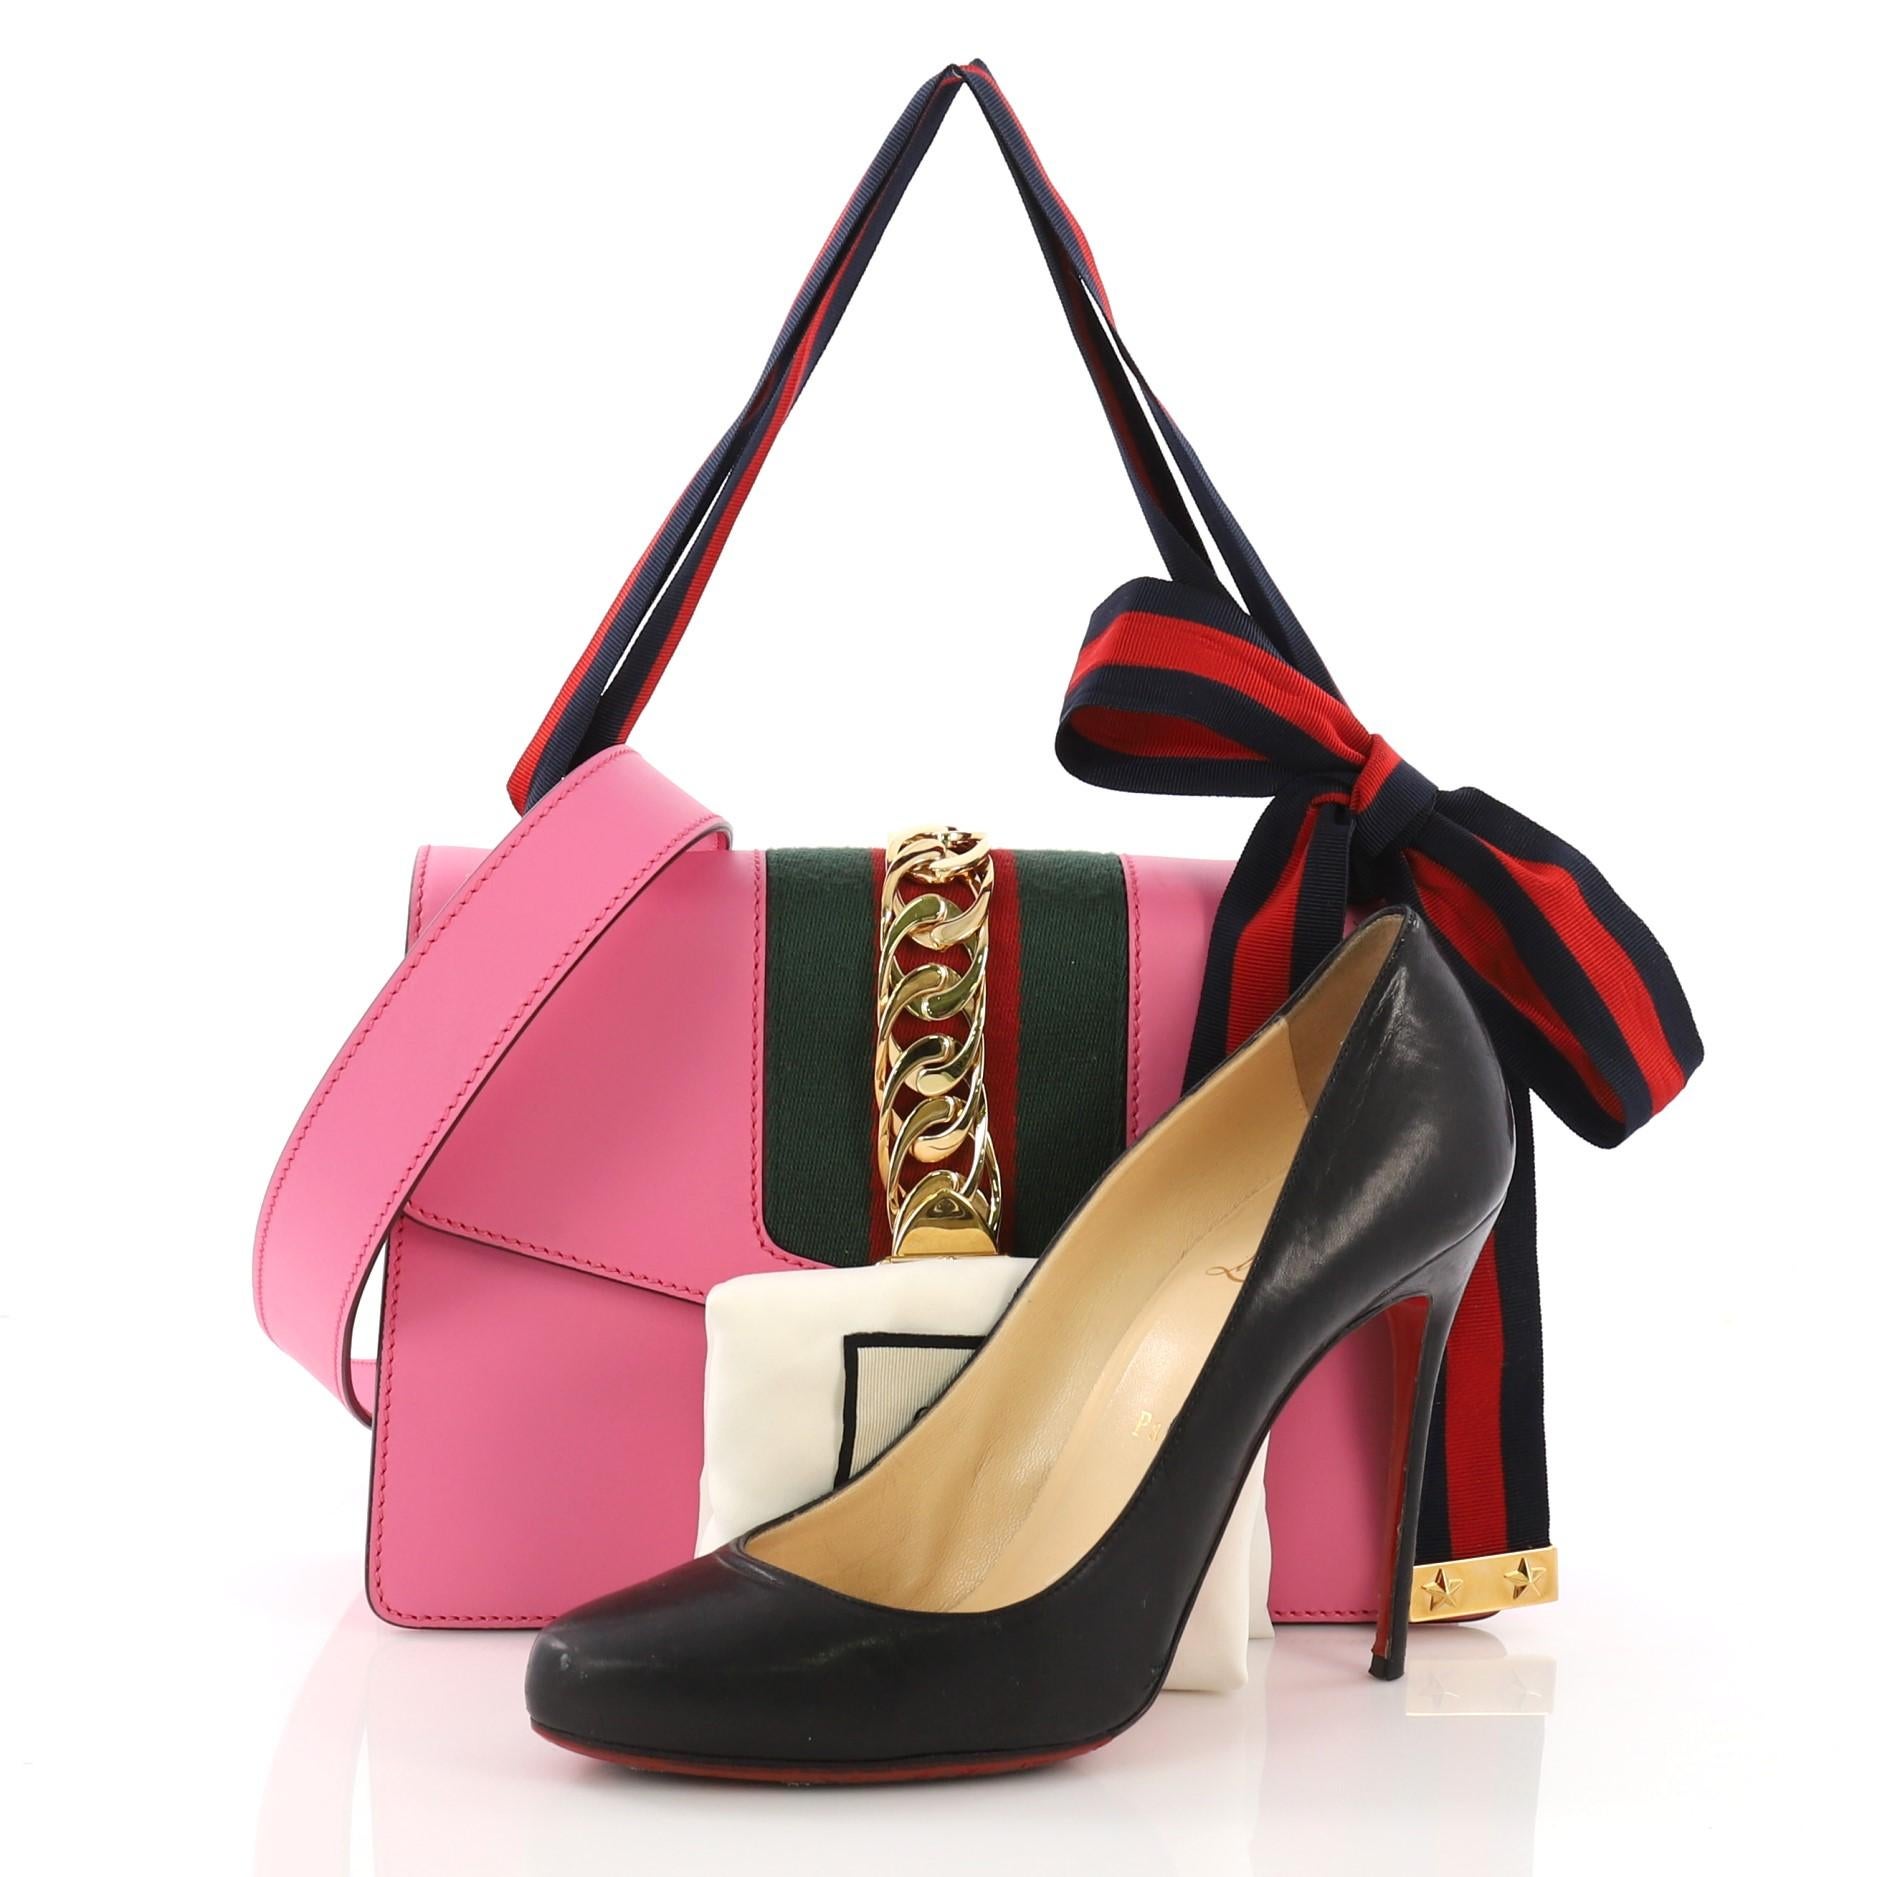 Diese Gucci Sylvie Shoulder Bag Leather Small aus rosafarbenem Leder verfügt über einen einzelnen Looping-Ledergriff, ein Nylongewebe mit Panzerkette und Schnallenverschluss sowie goldfarbene Beschläge. Es öffnet sich zu einem beige Mikrofaser